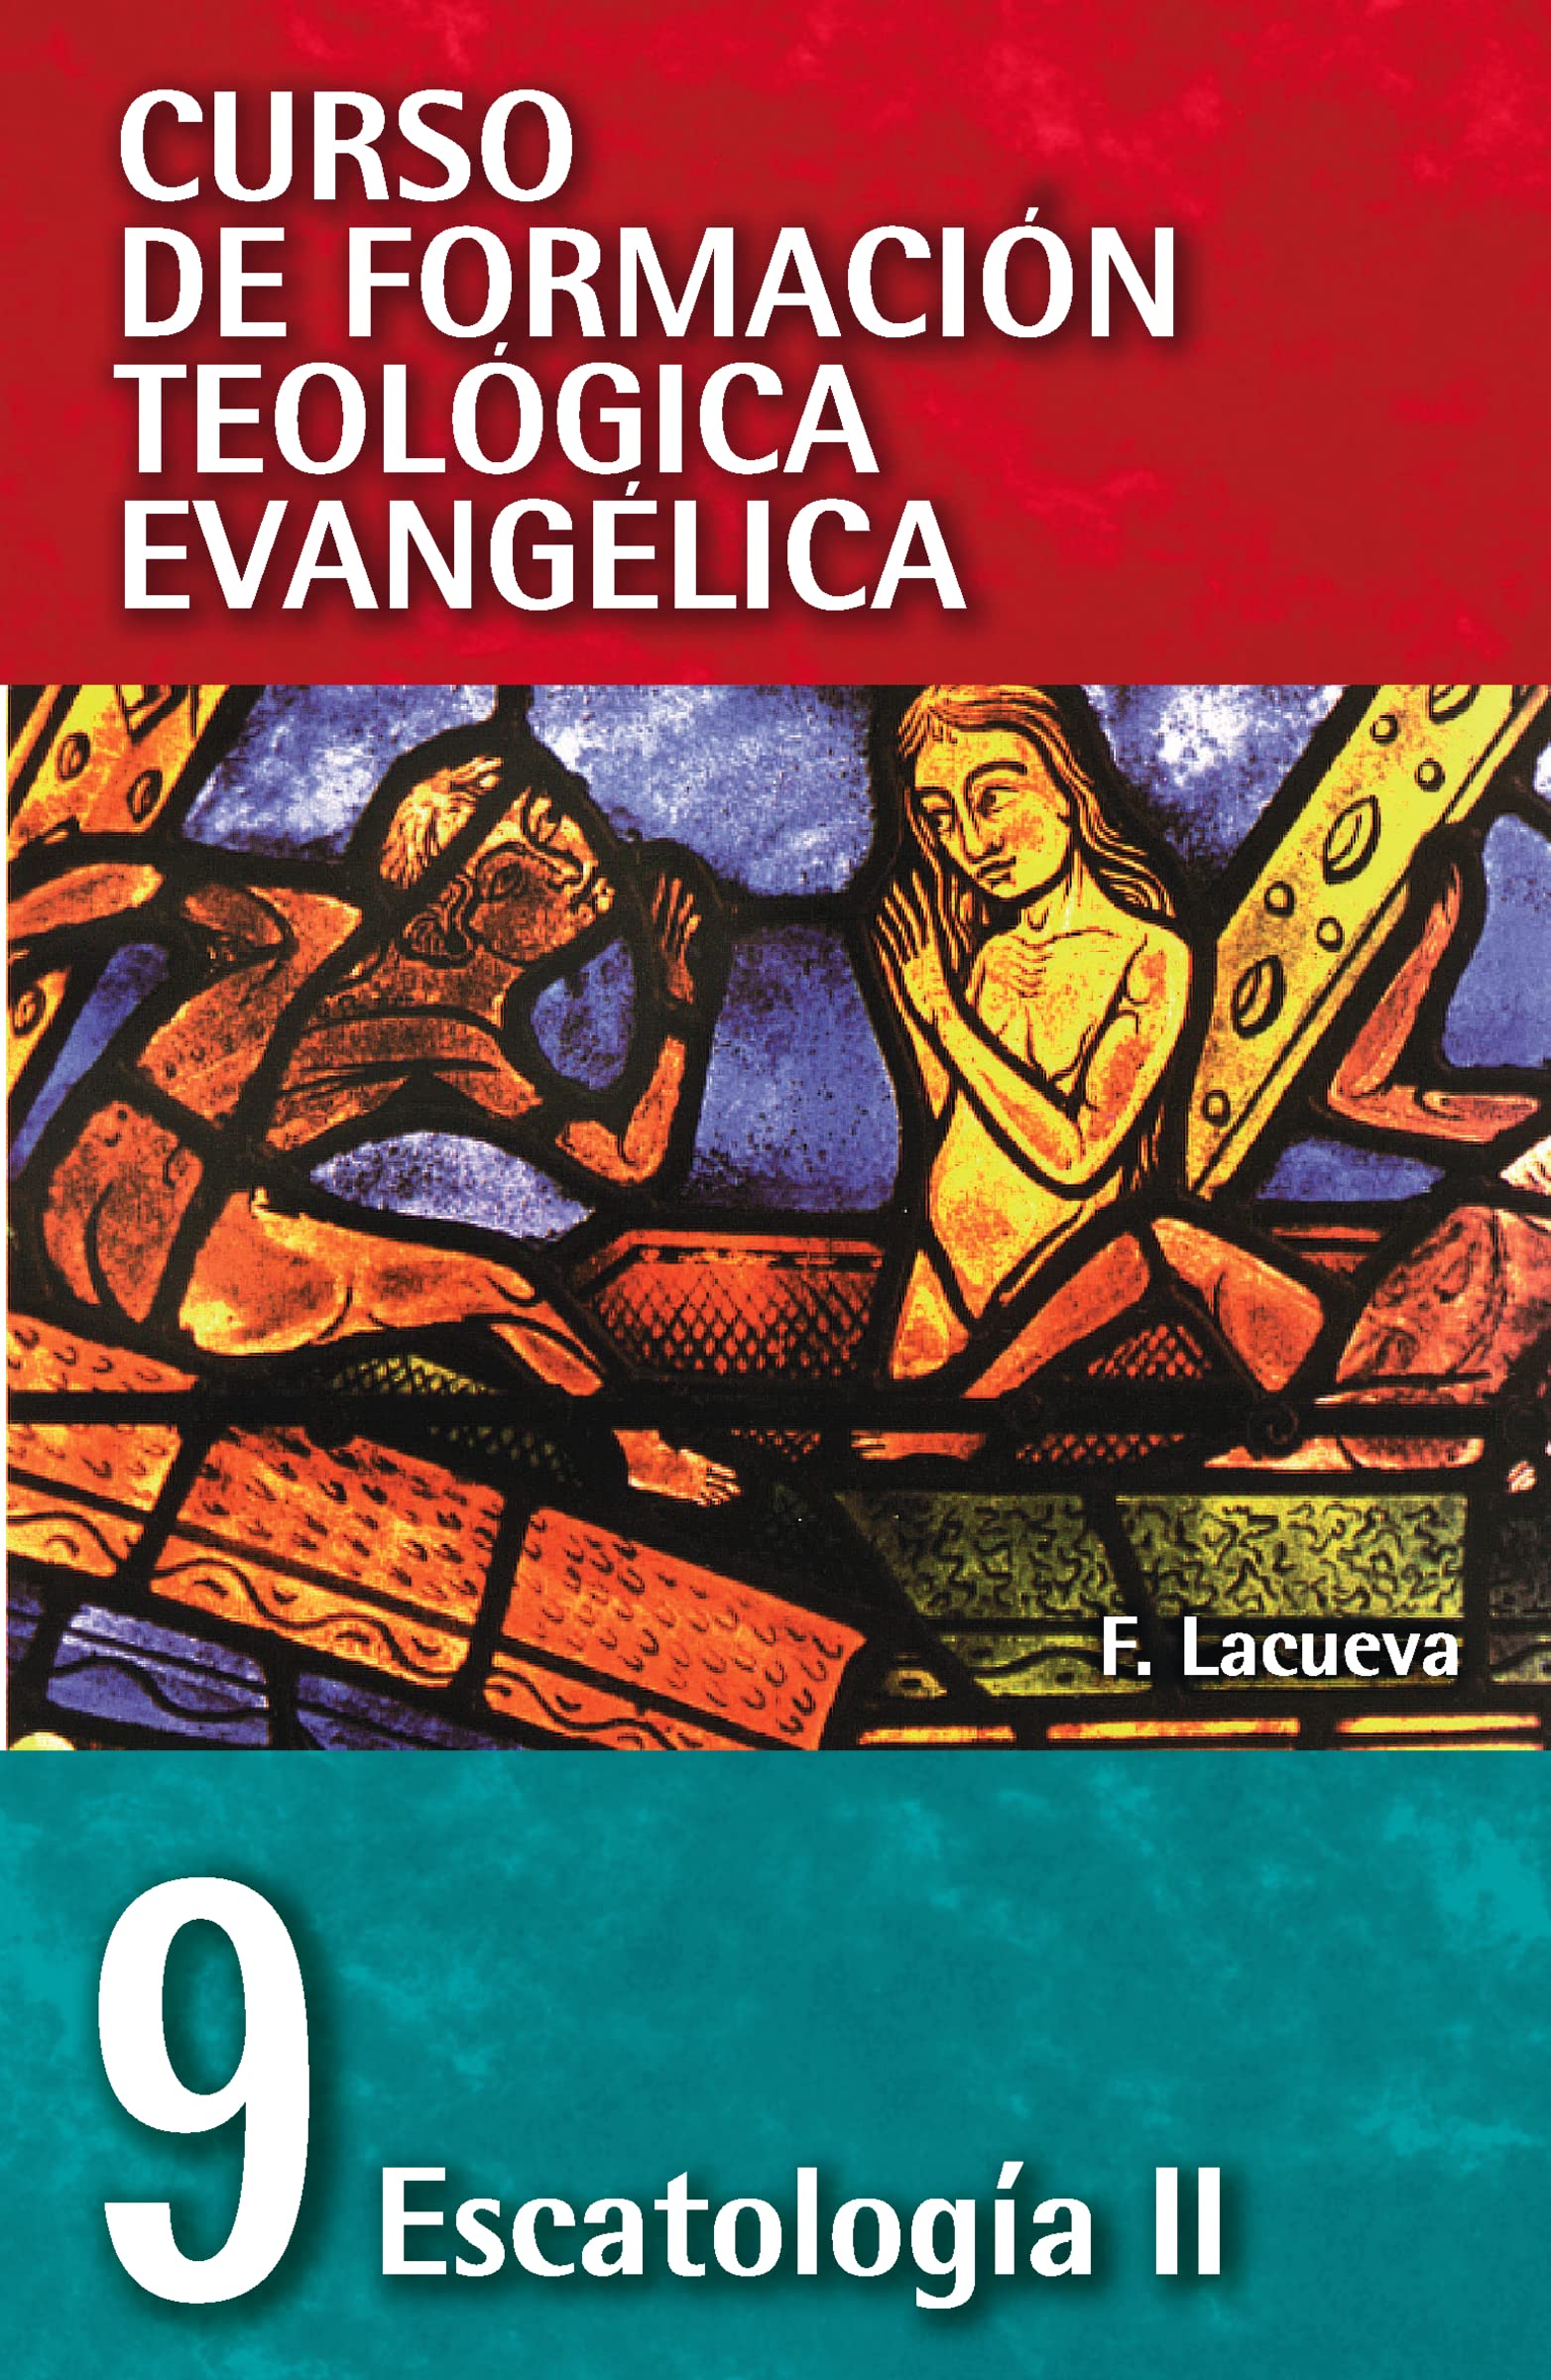 Escatologia II - Librería Libros Cristianos - Libro